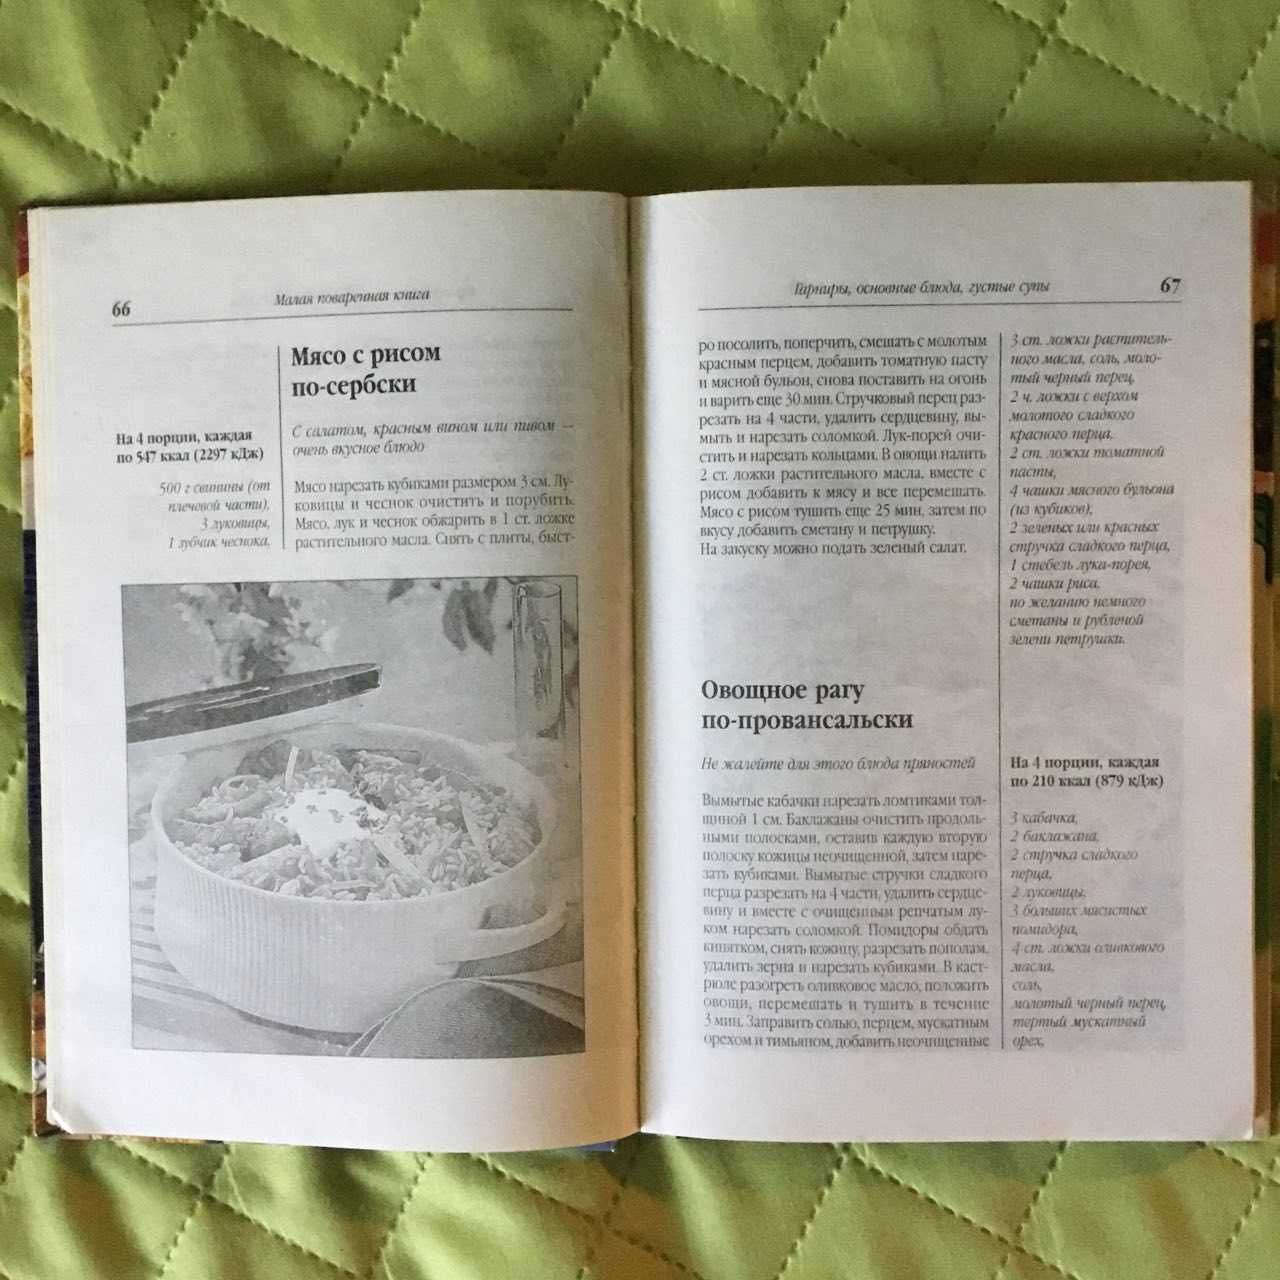 Кулинария книги: Блюда на пару, Постные блюда, Запекаем в духовке и др